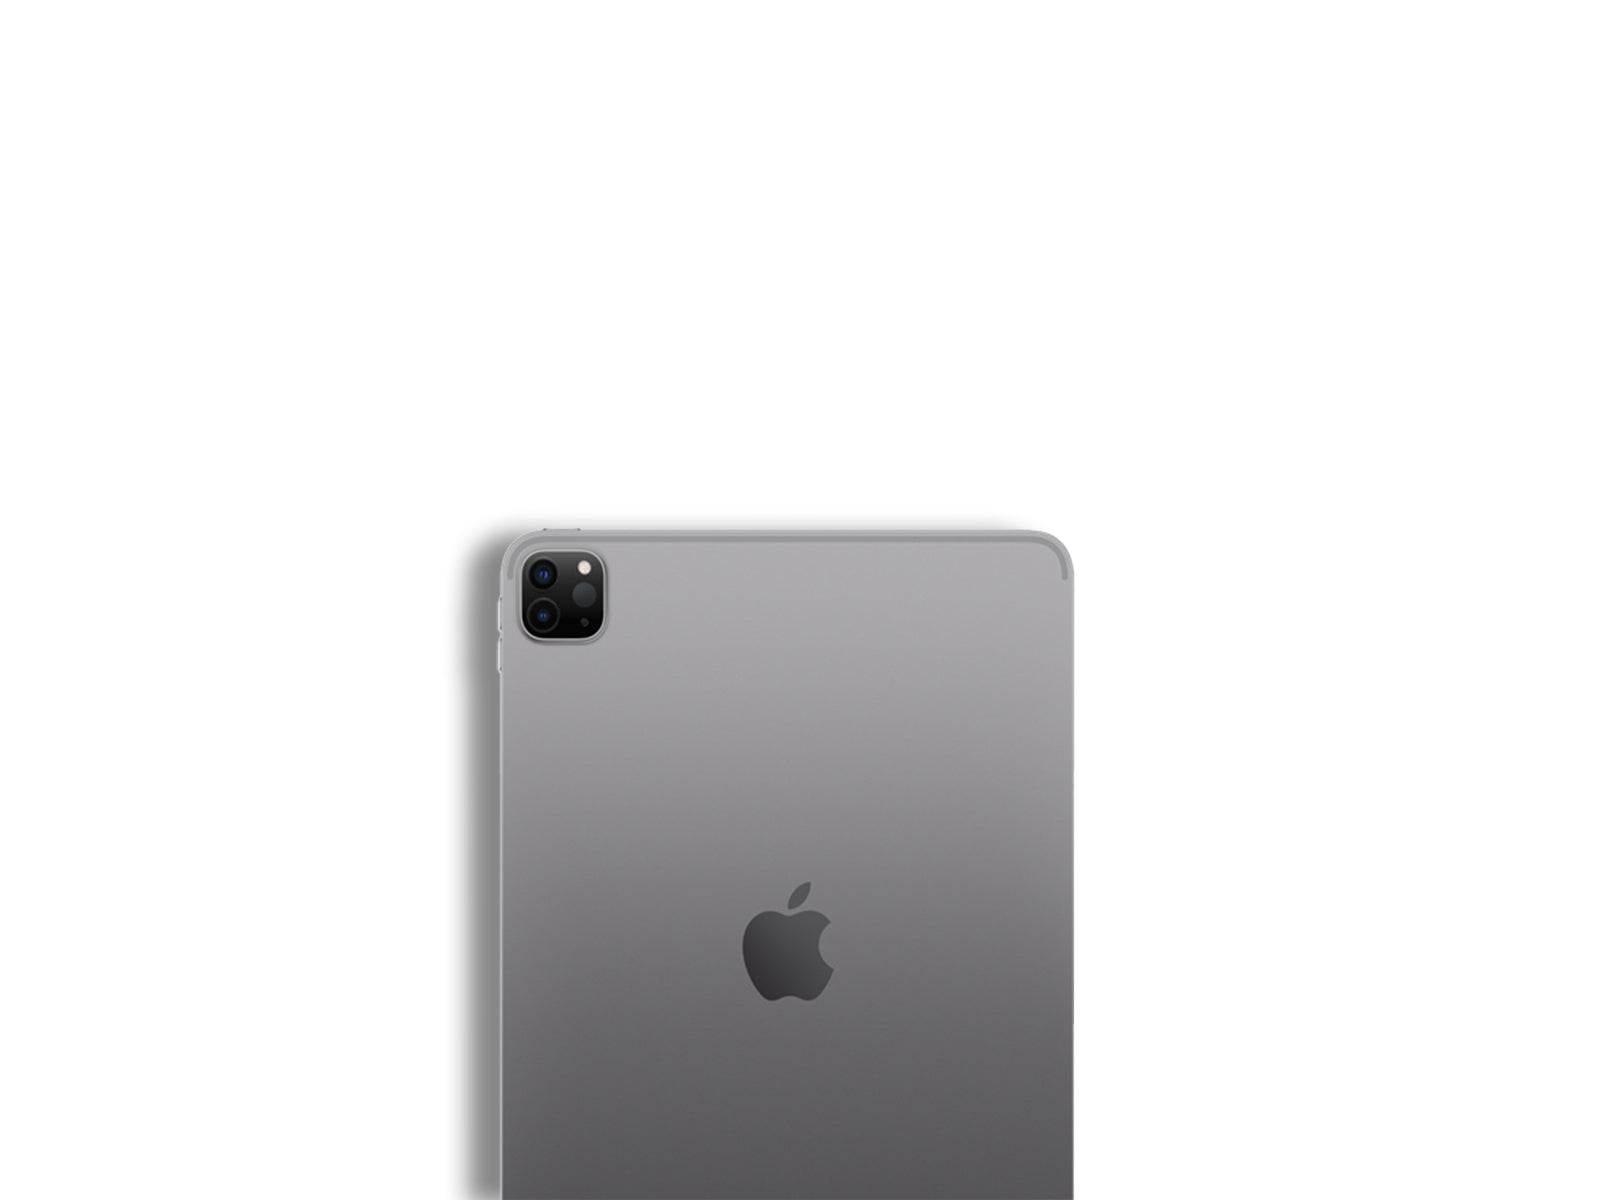 Apple iPad Pro 2nd Gen 11 Inch In Space Grey Back